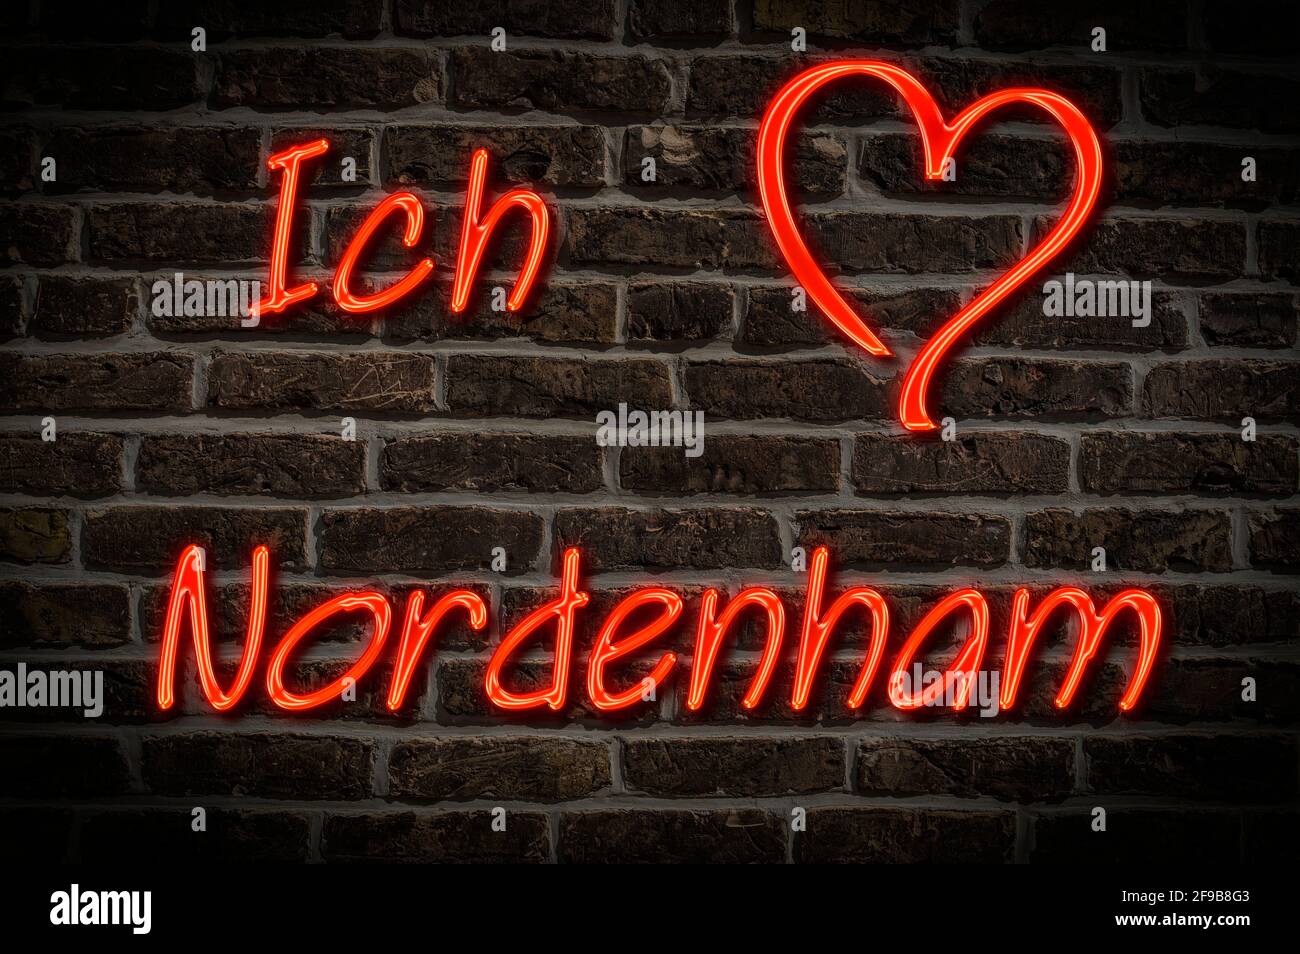 Leuchtreklame, Ich liebe Nordenham, Niedersachsen, Deutschland, Europa | Illuminated advertising, I love Nordenham, Lower Saxony, Germany, Europe Stock Photo